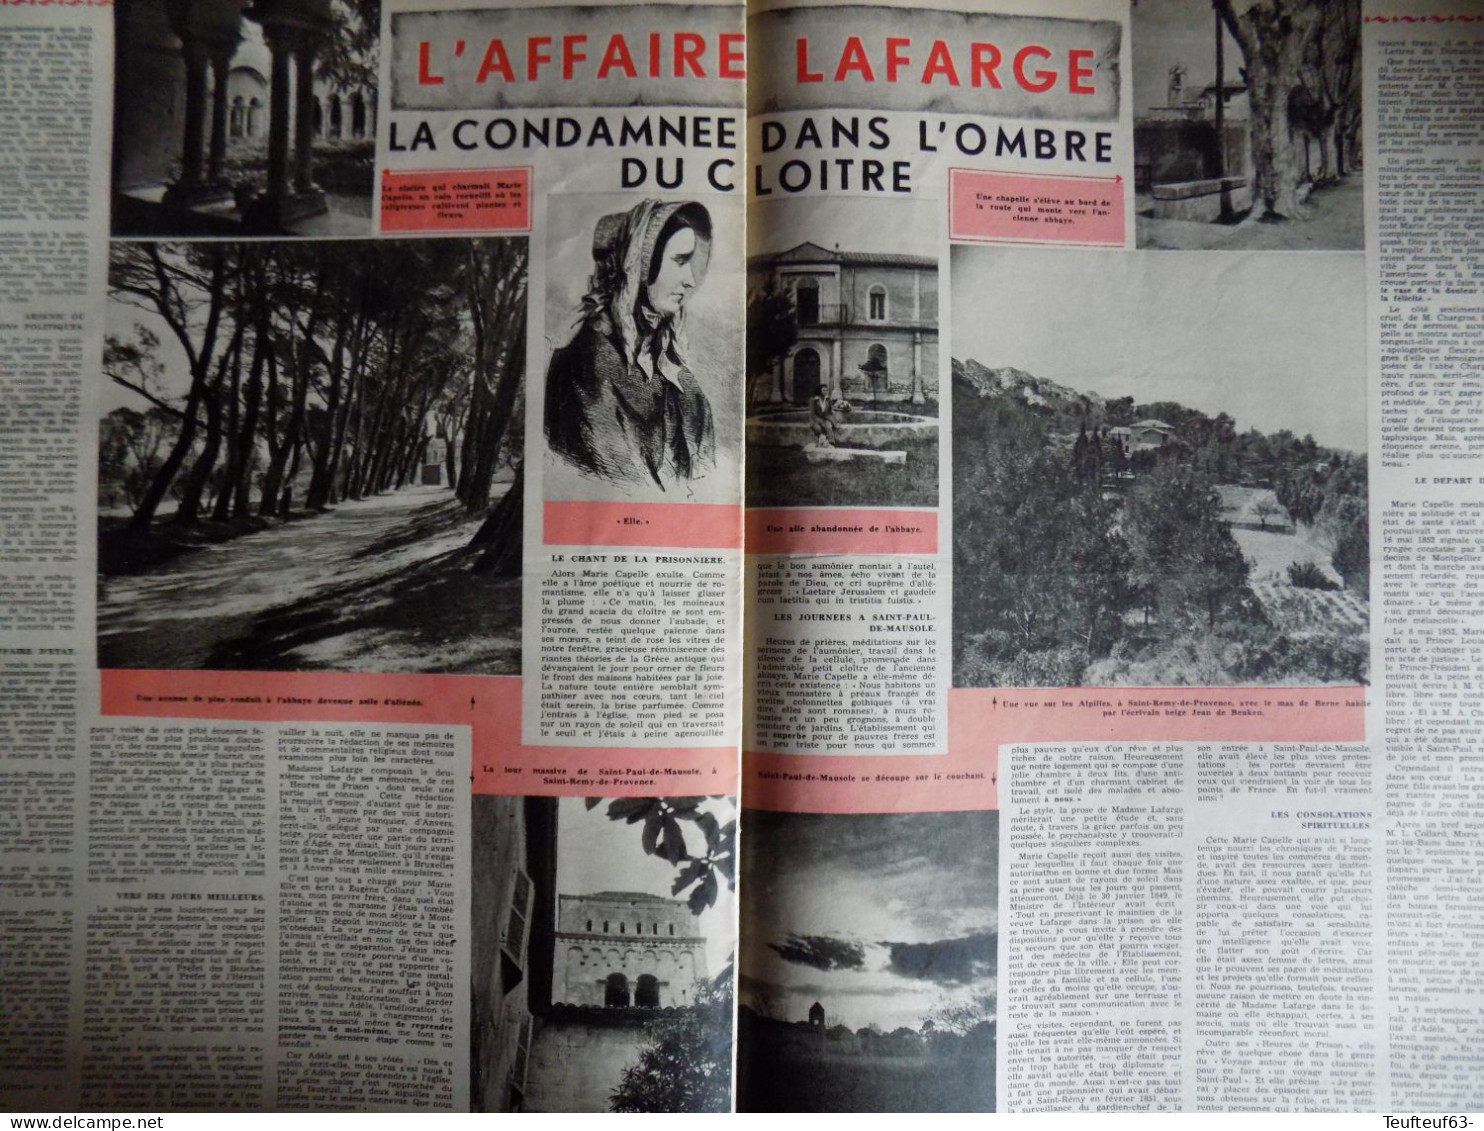 Le soir illustré n° 889 Jean Simmons - Fausto Coppi - Tour de France - la Lesse - affaire Lafarge - Mao-Tse-Tung...